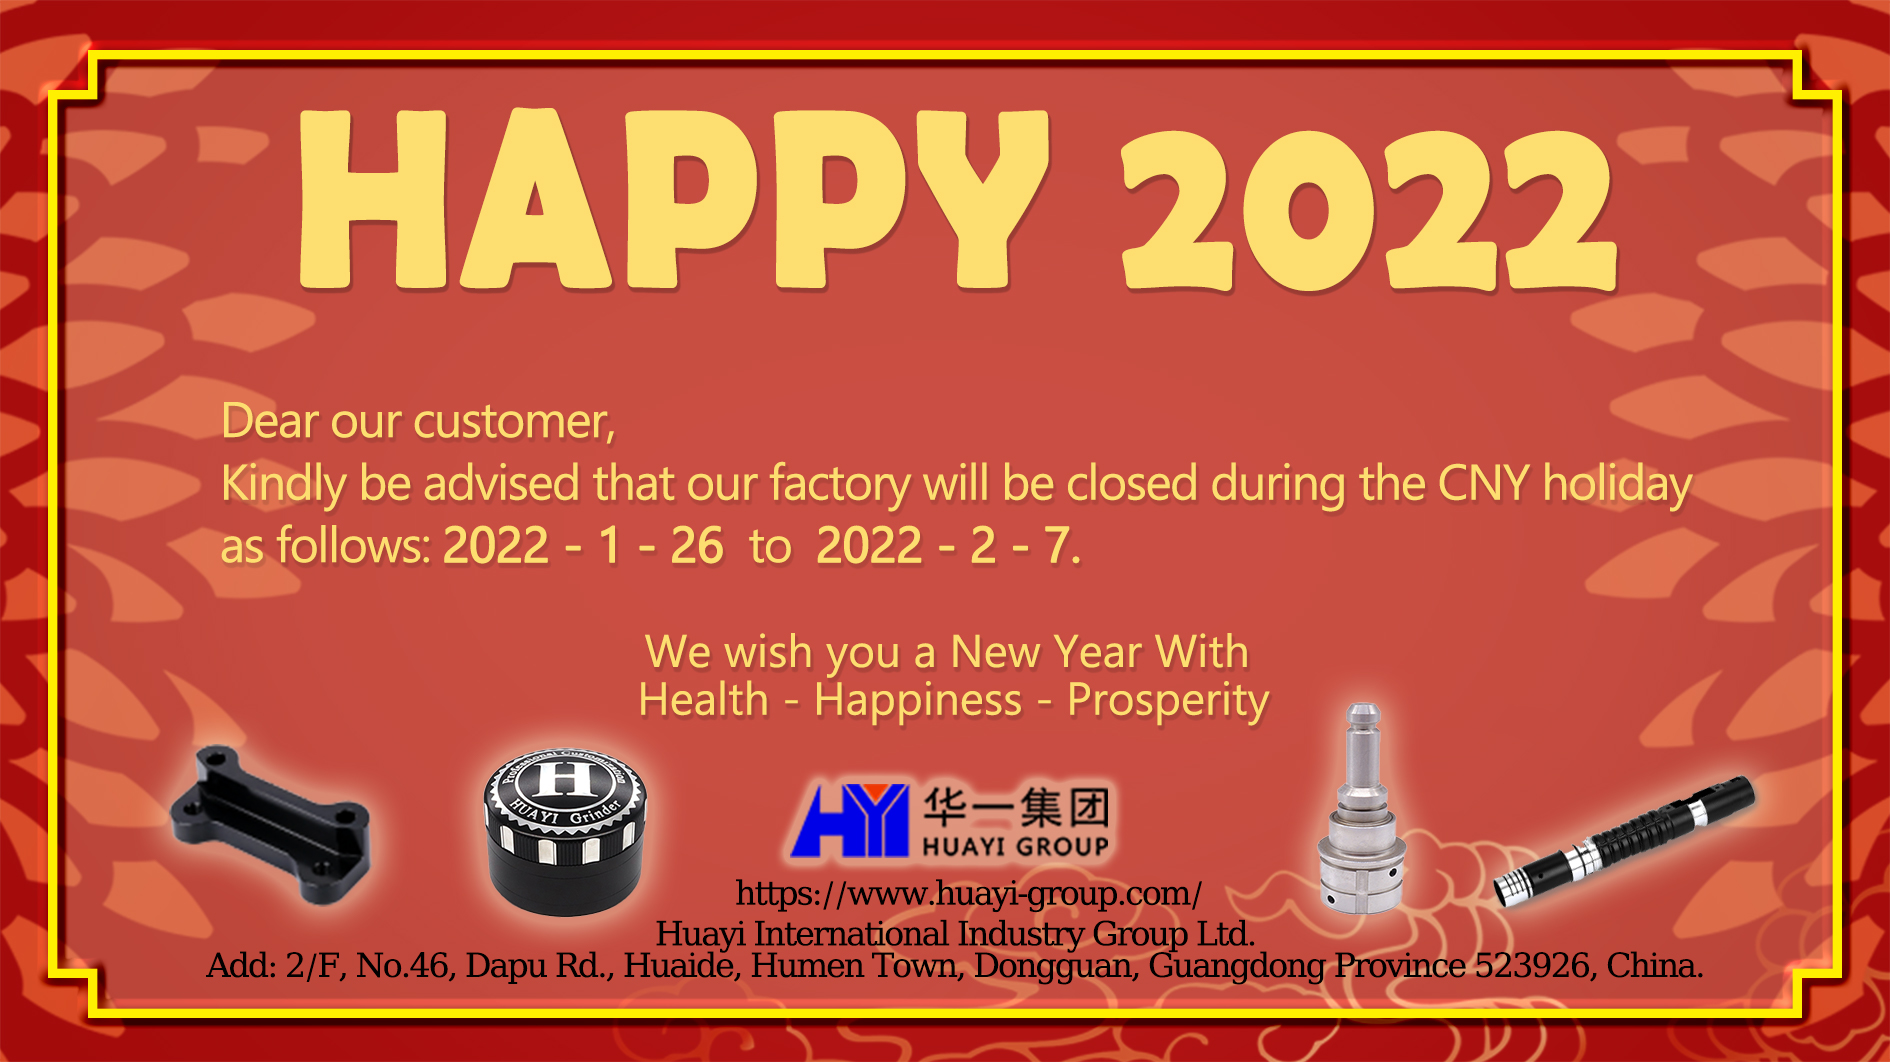 Aviso de vacacións do ano novo chinés 2022